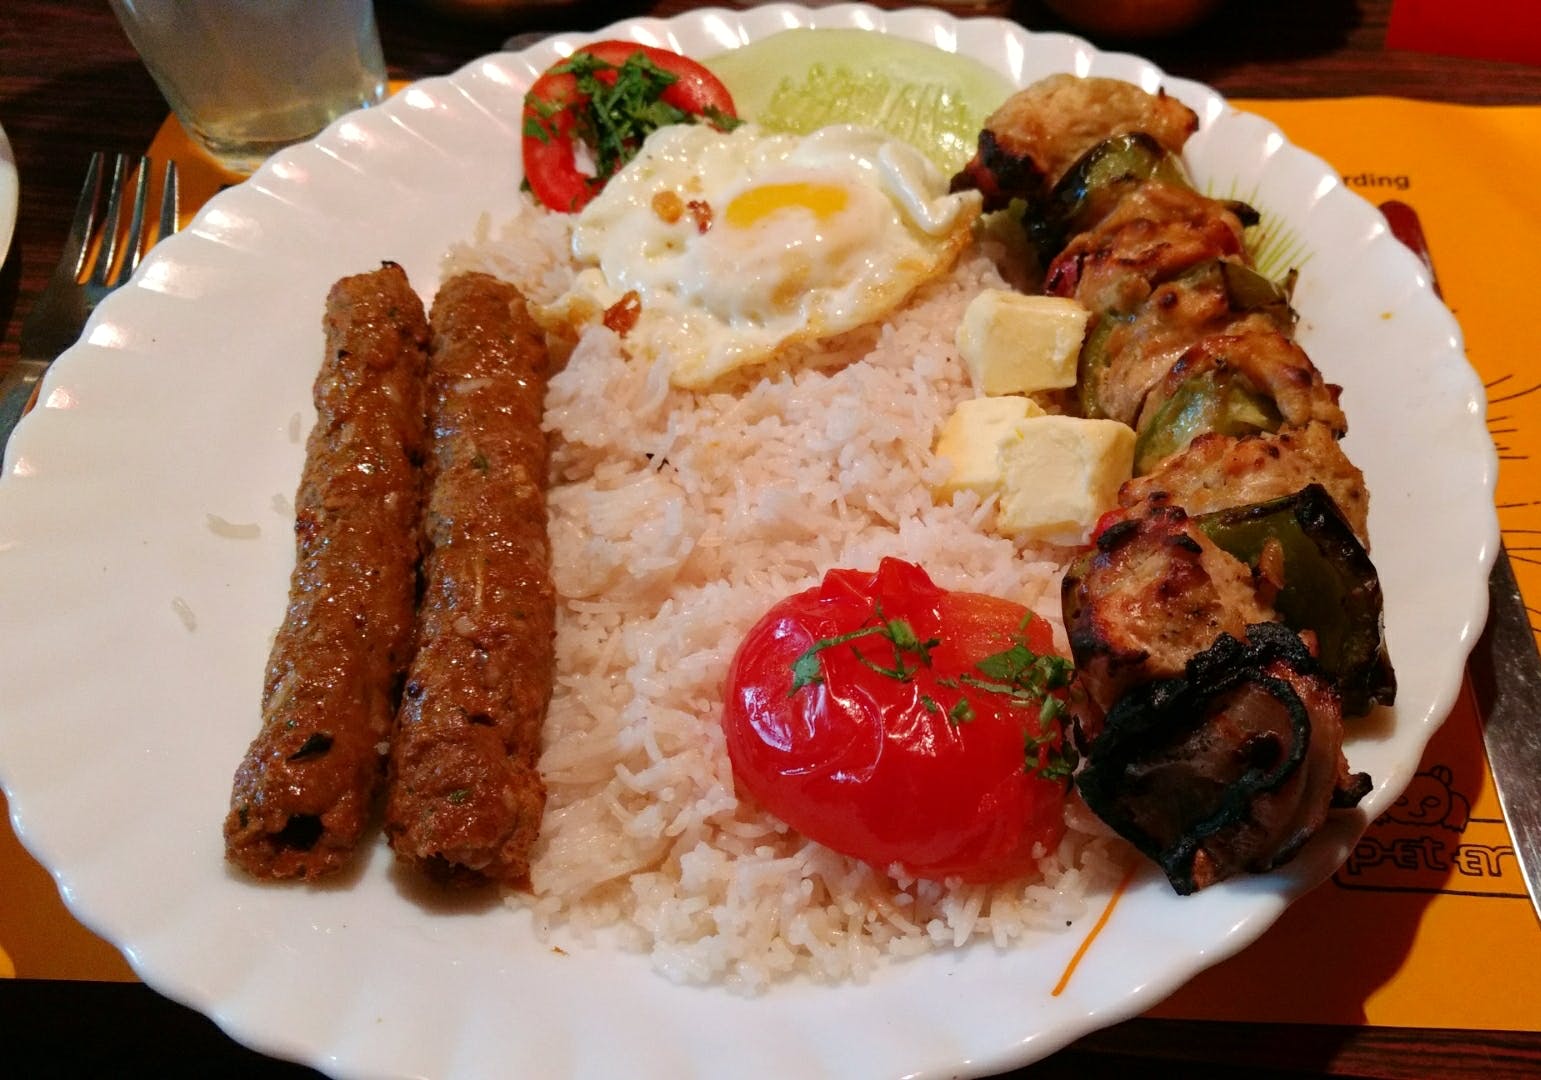 Dish,Food,Cuisine,Chelow kabab,Kebab,Ingredient,Meat,Produce,Adana kebabı,Staple food